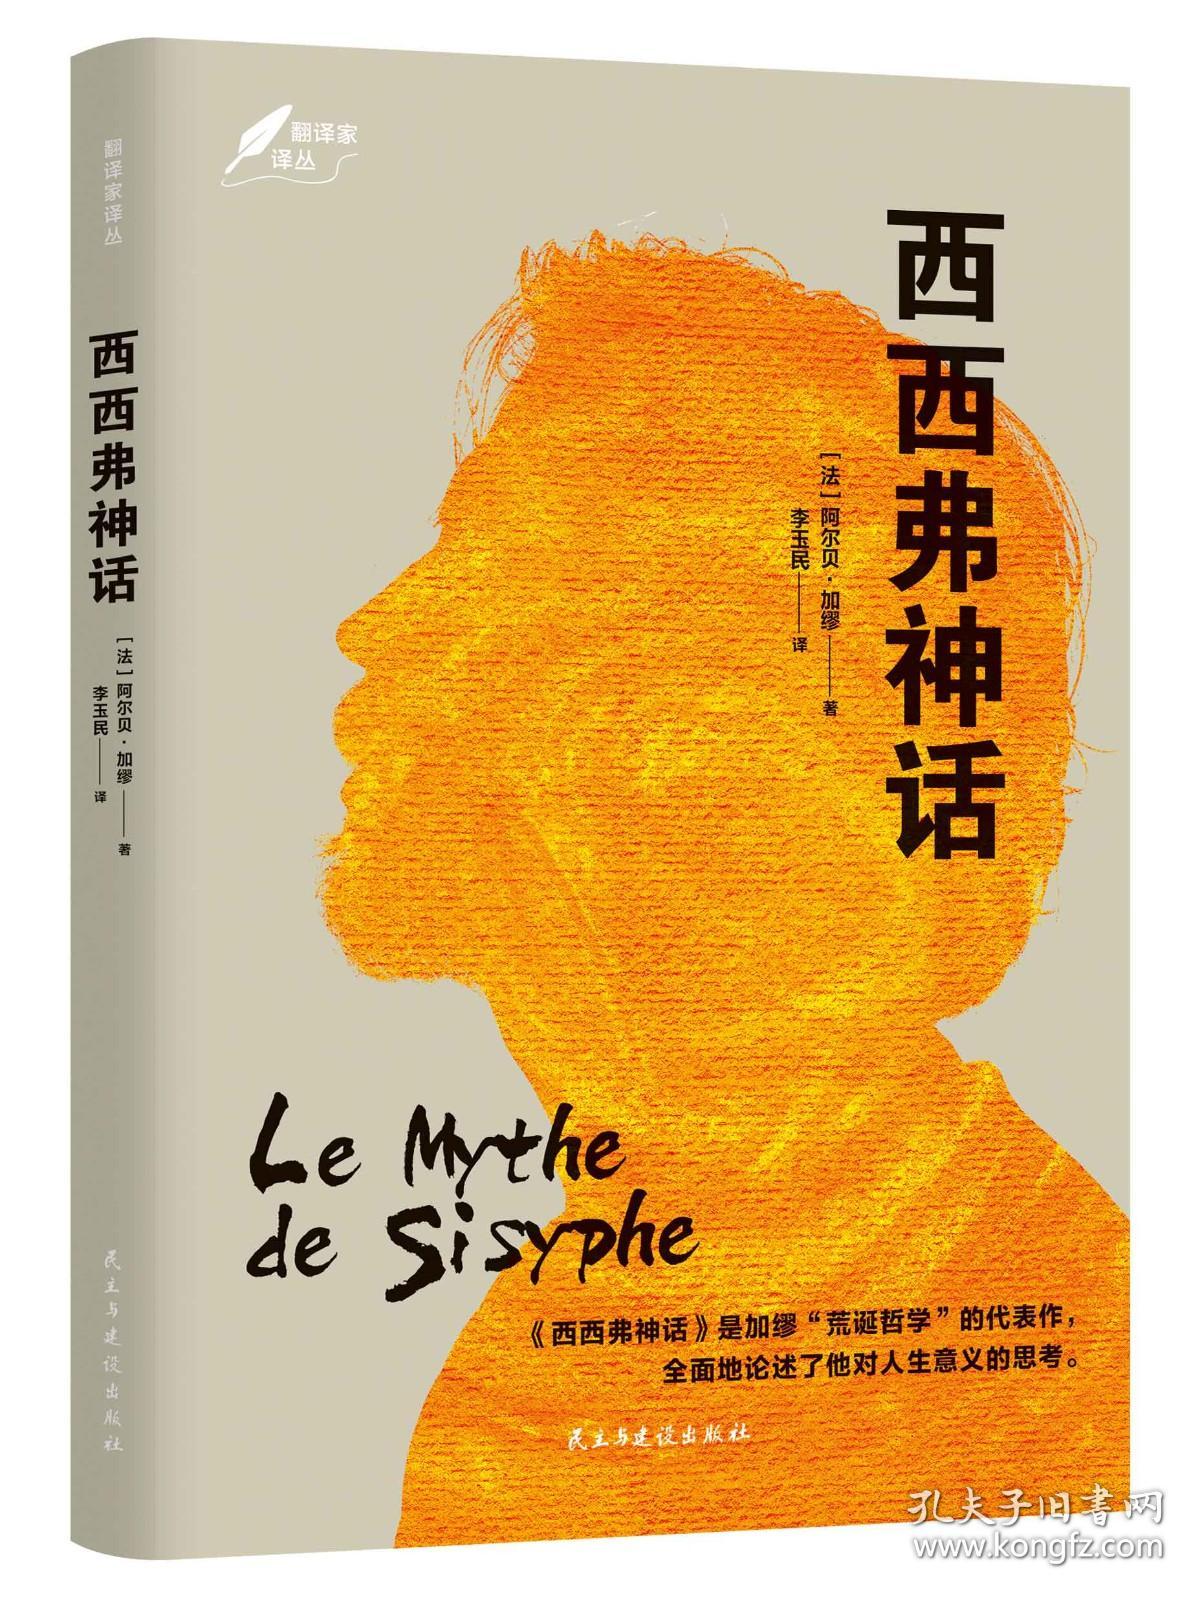 正版现货 西西弗神话 加缪著 诺贝尔文学奖获奖者作品 法国存在主义大师荒诞哲学 世界名著外国小说